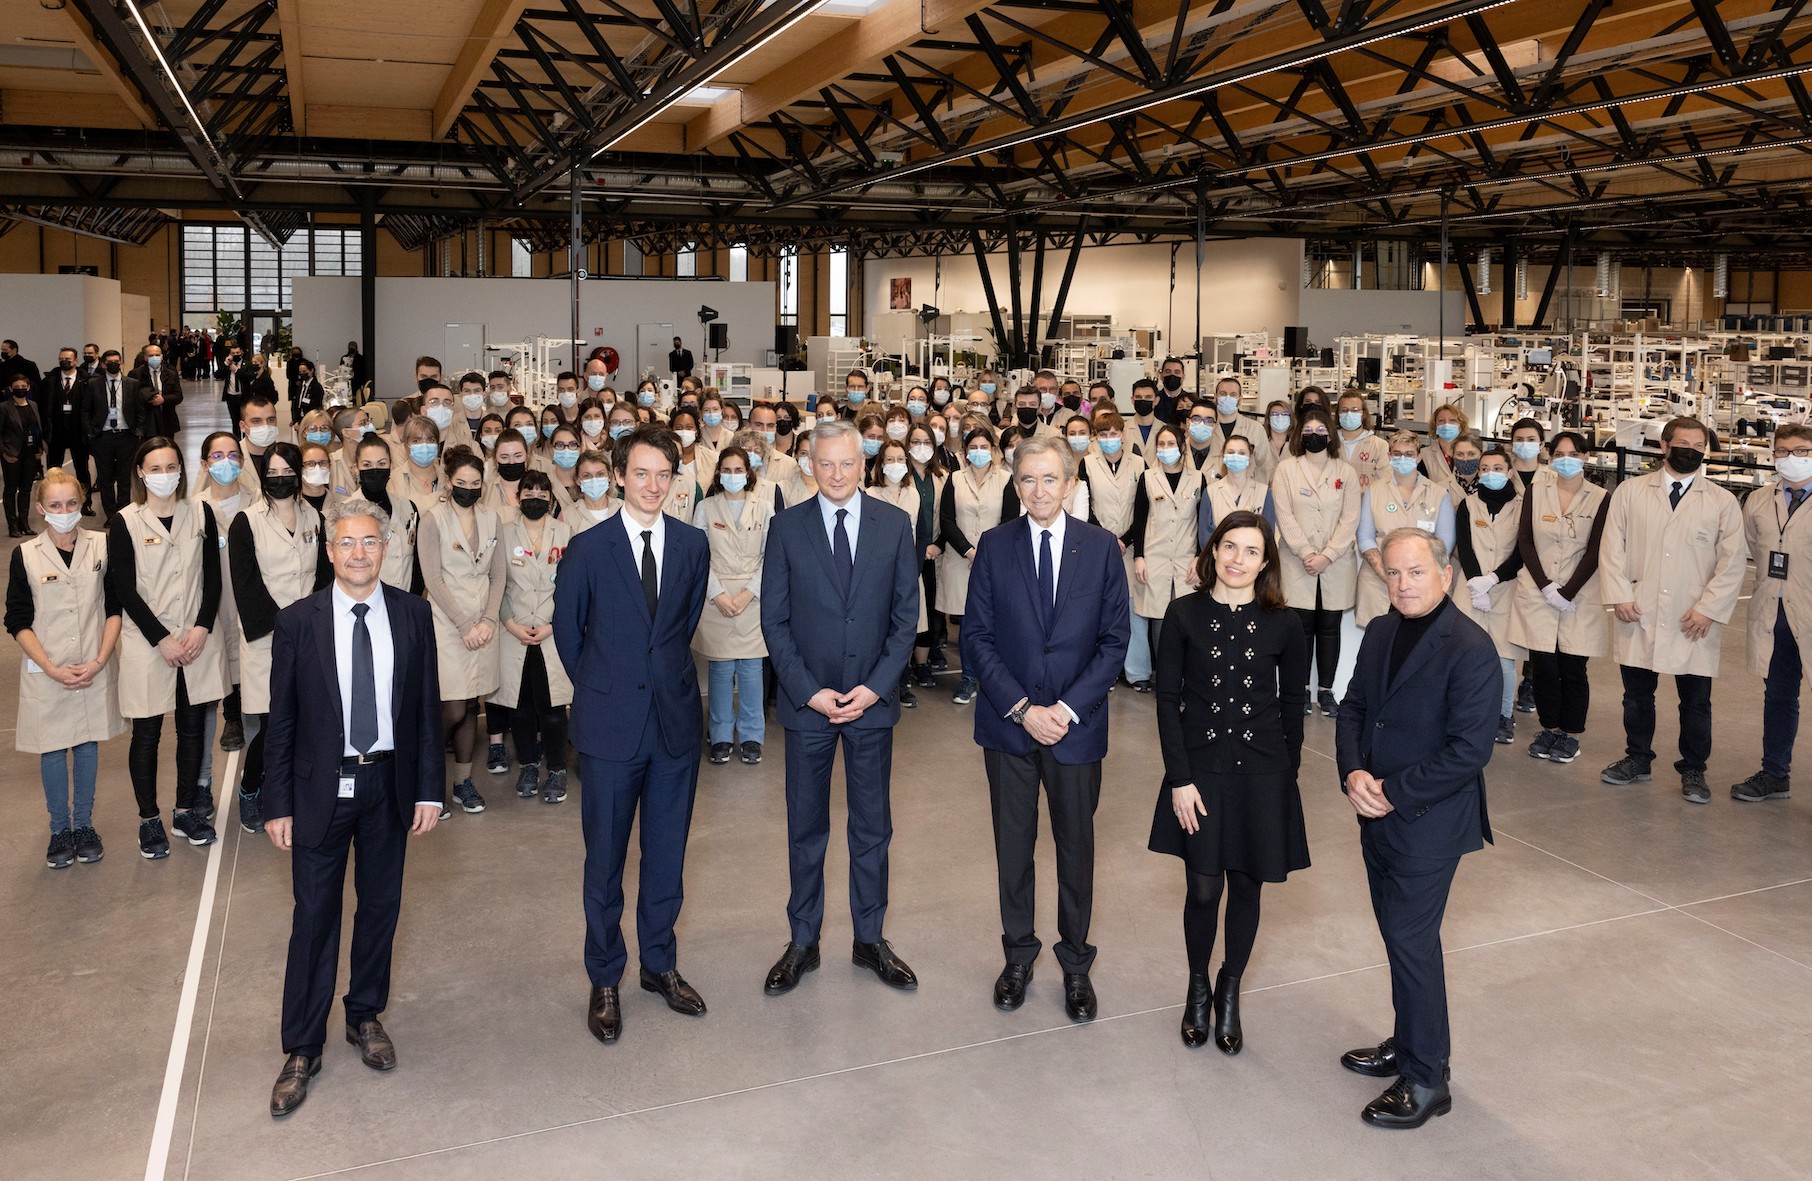 Vuitton doit ouvrir son nouvel atelier courant janvier à Saint-Pourçain-sur-Sioule  (Allier) en créant 250 emplois - Saint-Pourçain-sur-Sioule (03500)